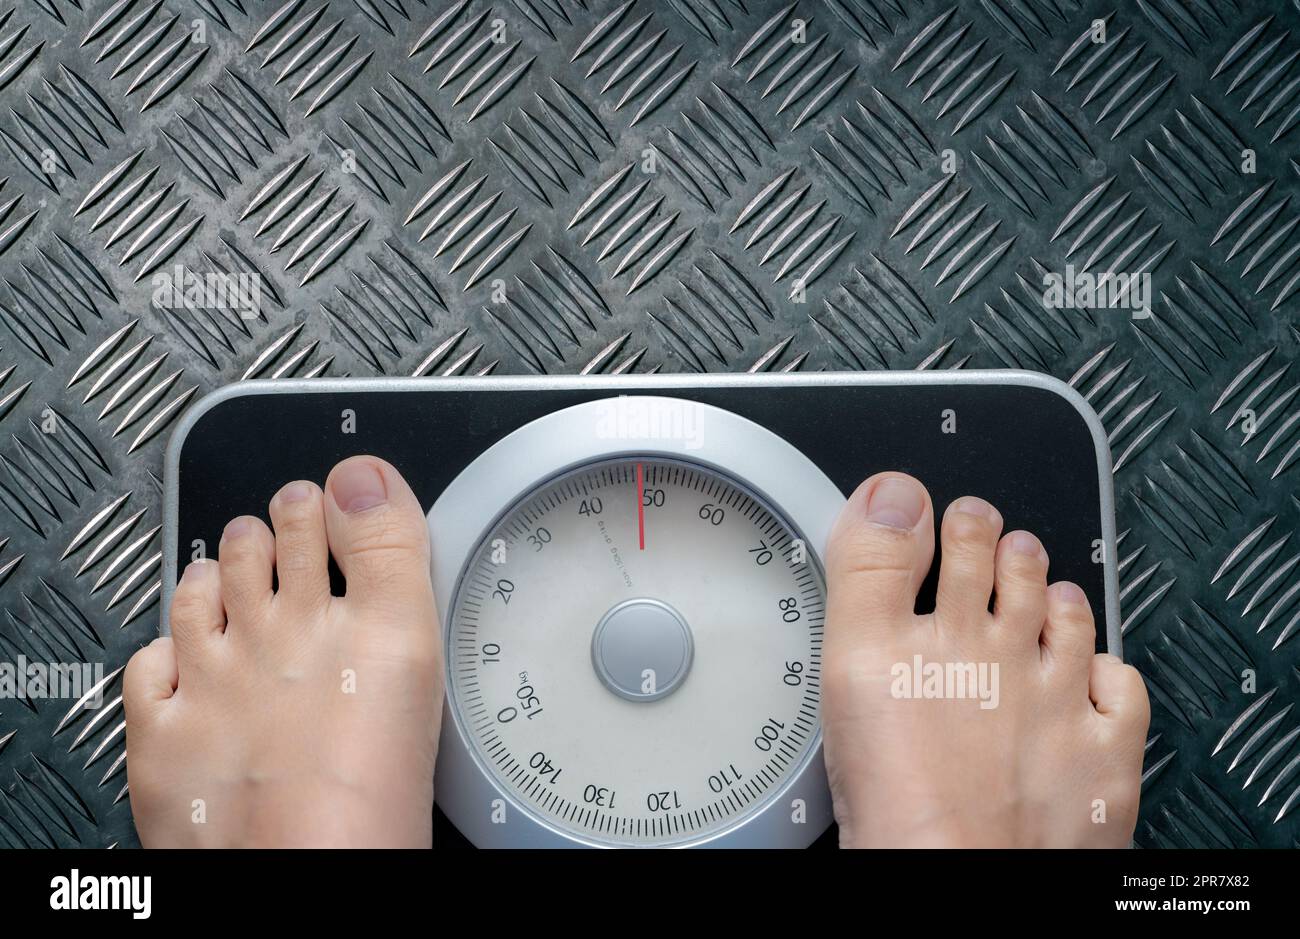 Draufsicht der Füße auf der Waage. Frauen wiegen nach Diätkontrolle auf einer Gewichtsbilanzskala. Gesundes Körpergewicht. Gewicht und Fettabbau. Gewichtsmessgerät. Body-Mass-Index oder BMI-Konzept. Stockfoto